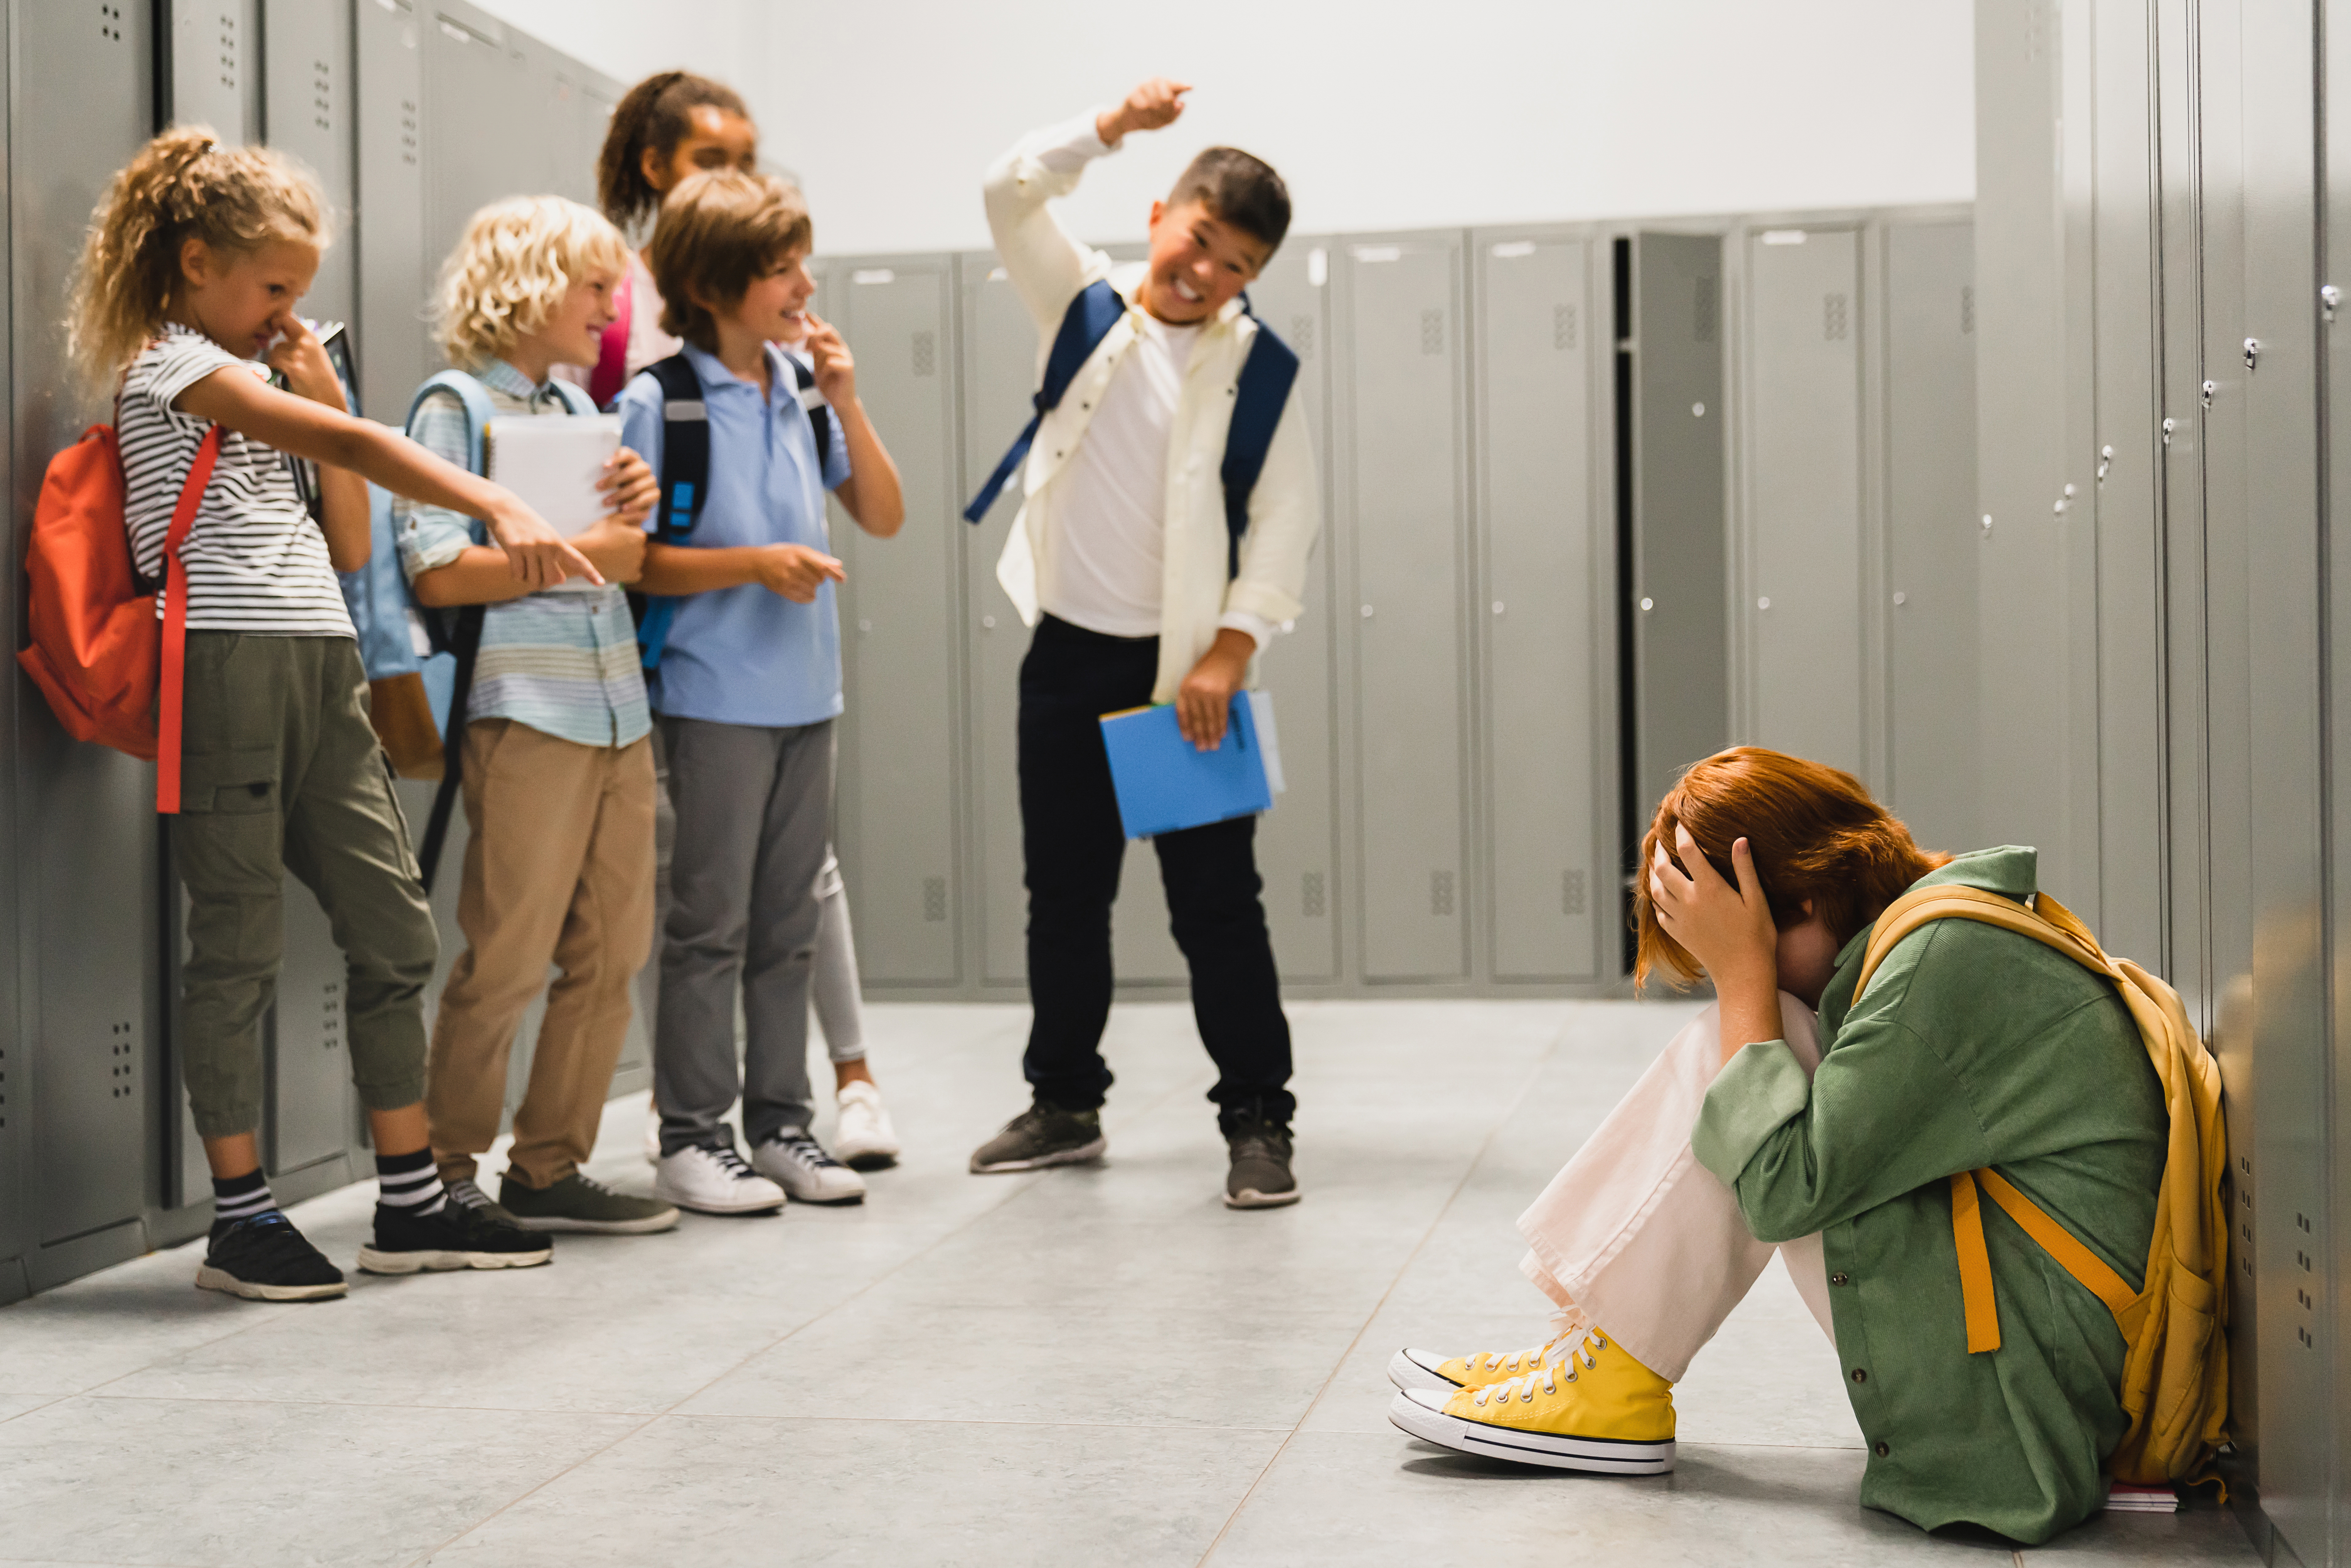 Des écoliers intimident un élève | Source : Shutterstock